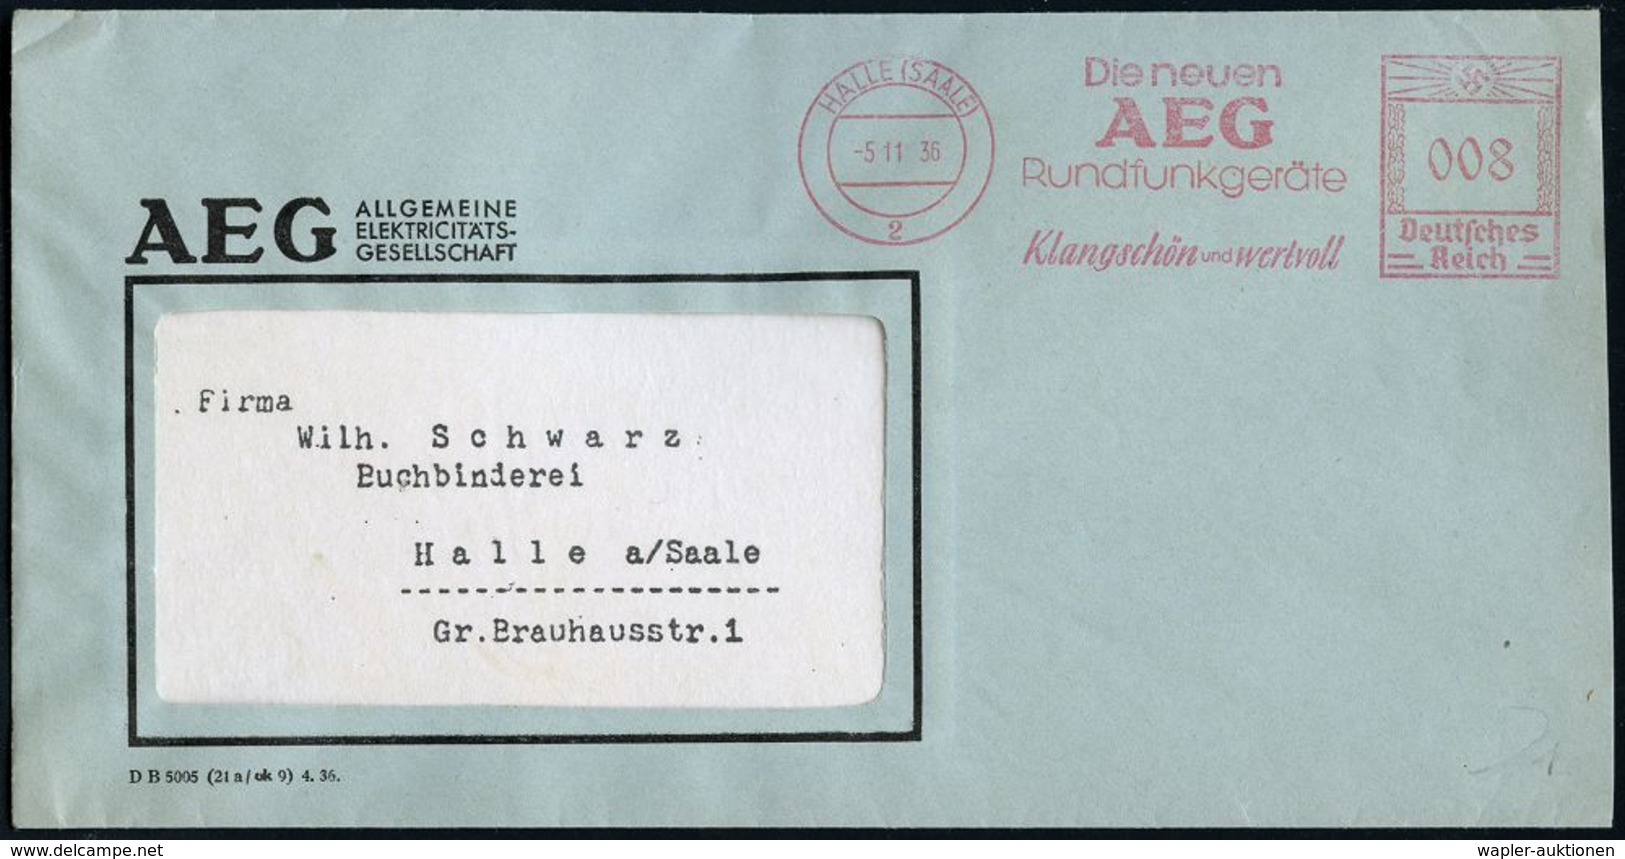 RADIO & RADIO-INDUSTRIE / APPARATE : HALLE (SAALE)/ 2/ Die Neuen/ AEG/ Rundfunkgeräte/ Klangschön U.wertvoll 1936 (5.11. - Non Classés